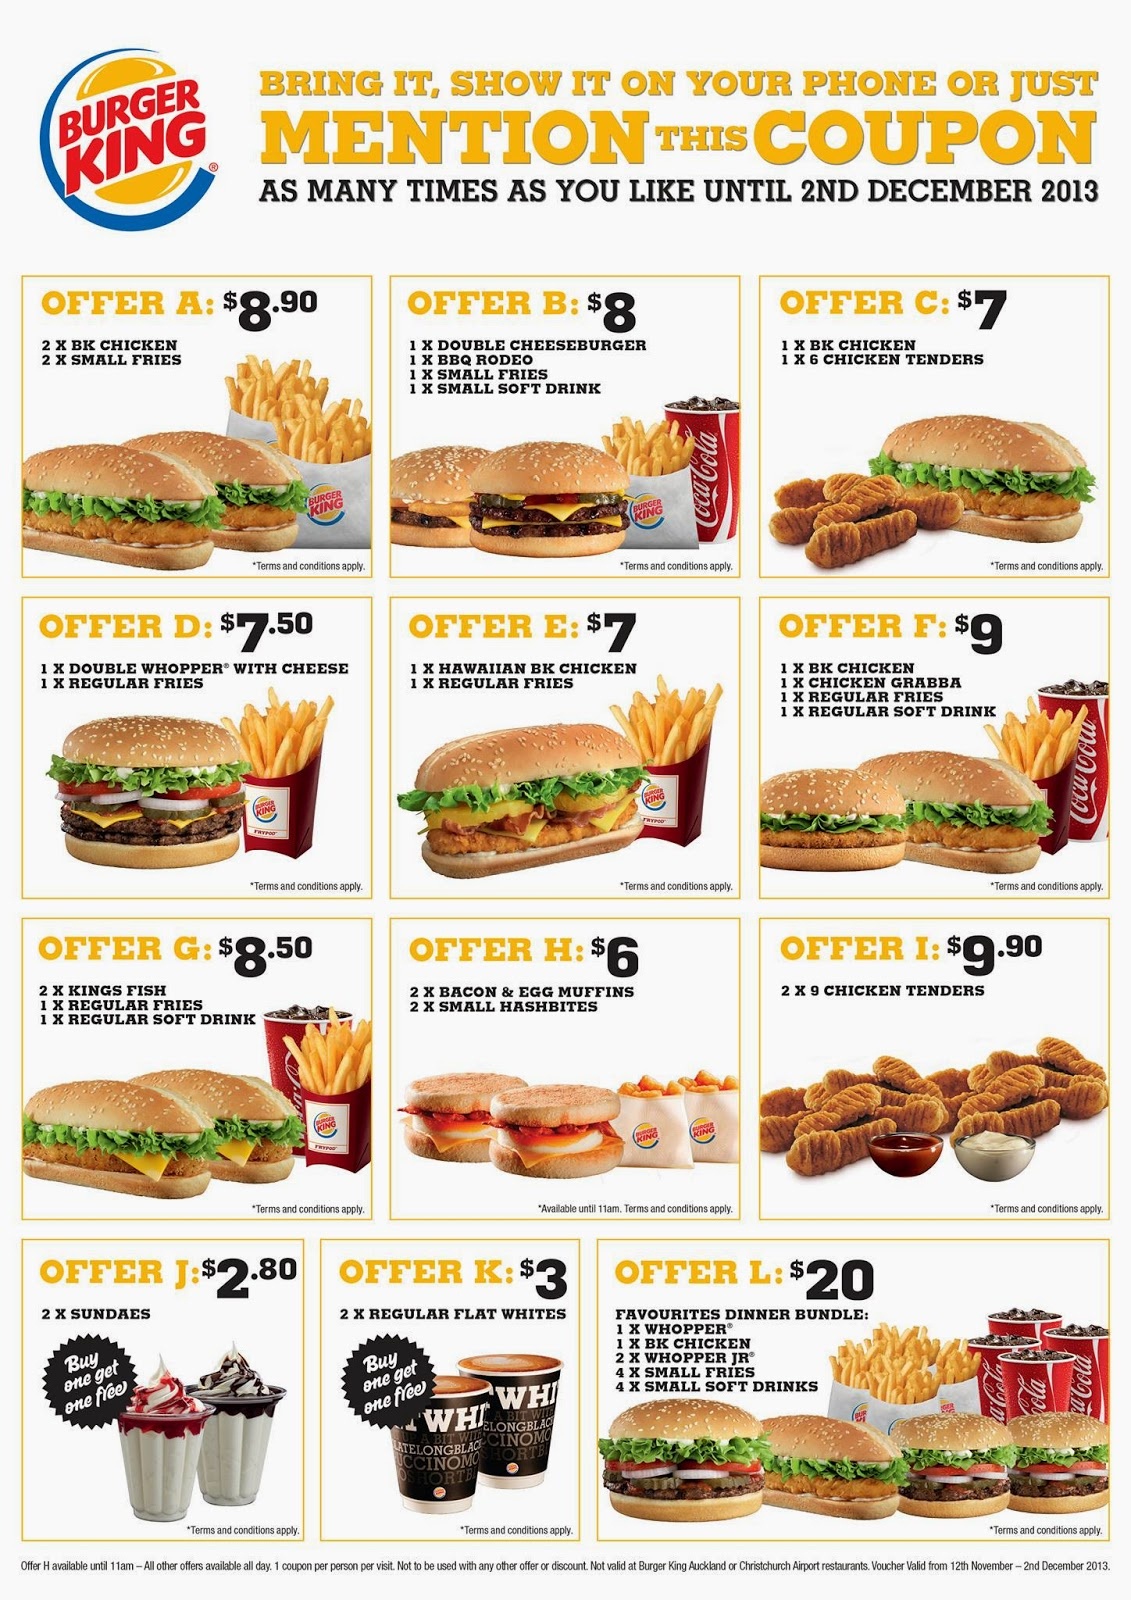 Free Burger King Coupons Printable Printable Templates